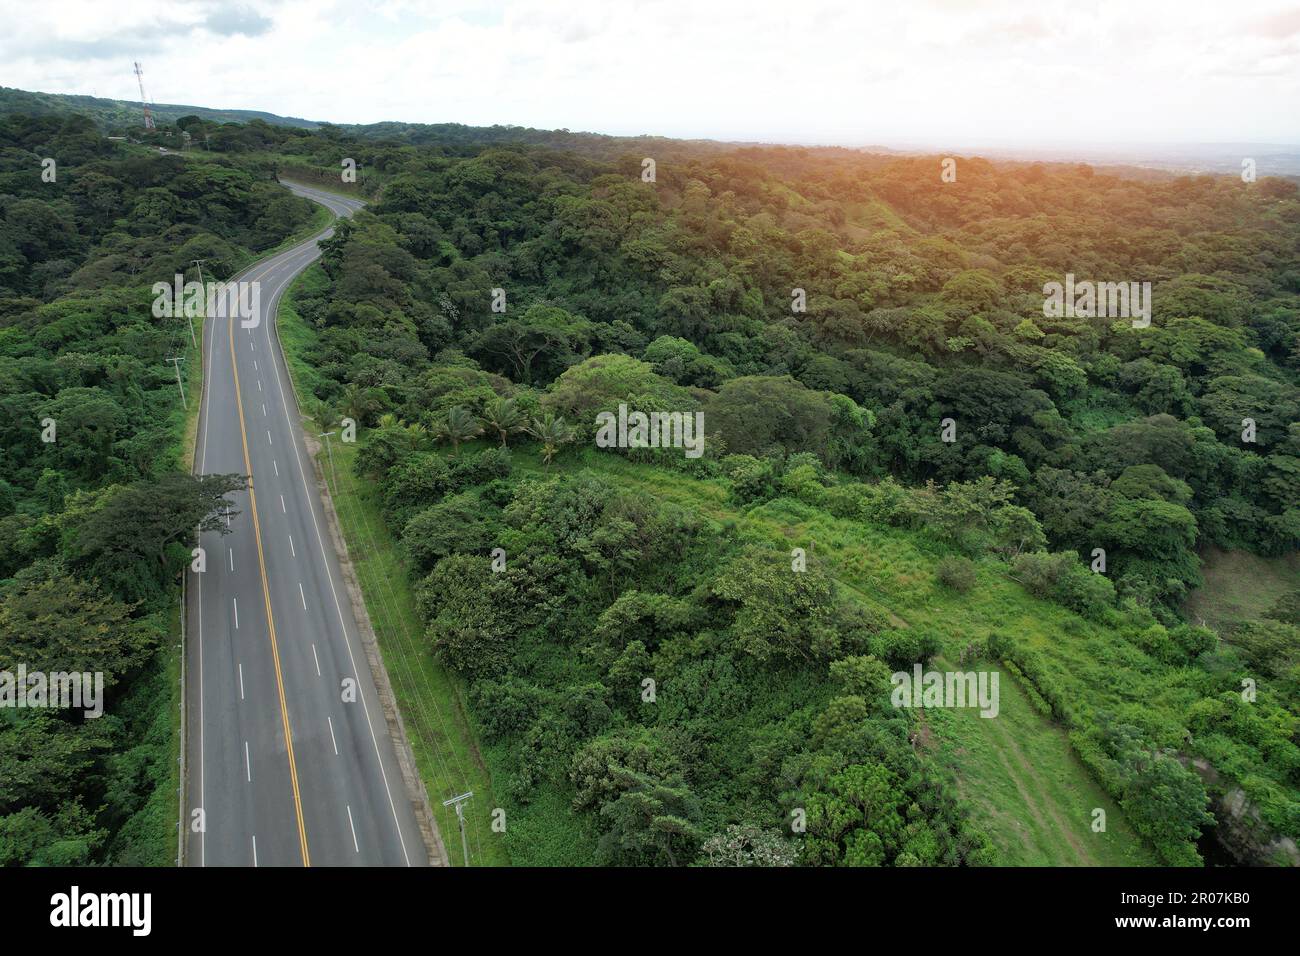 Route d'autoroute vide sur fond de jungle vue aérienne de drone Banque D'Images